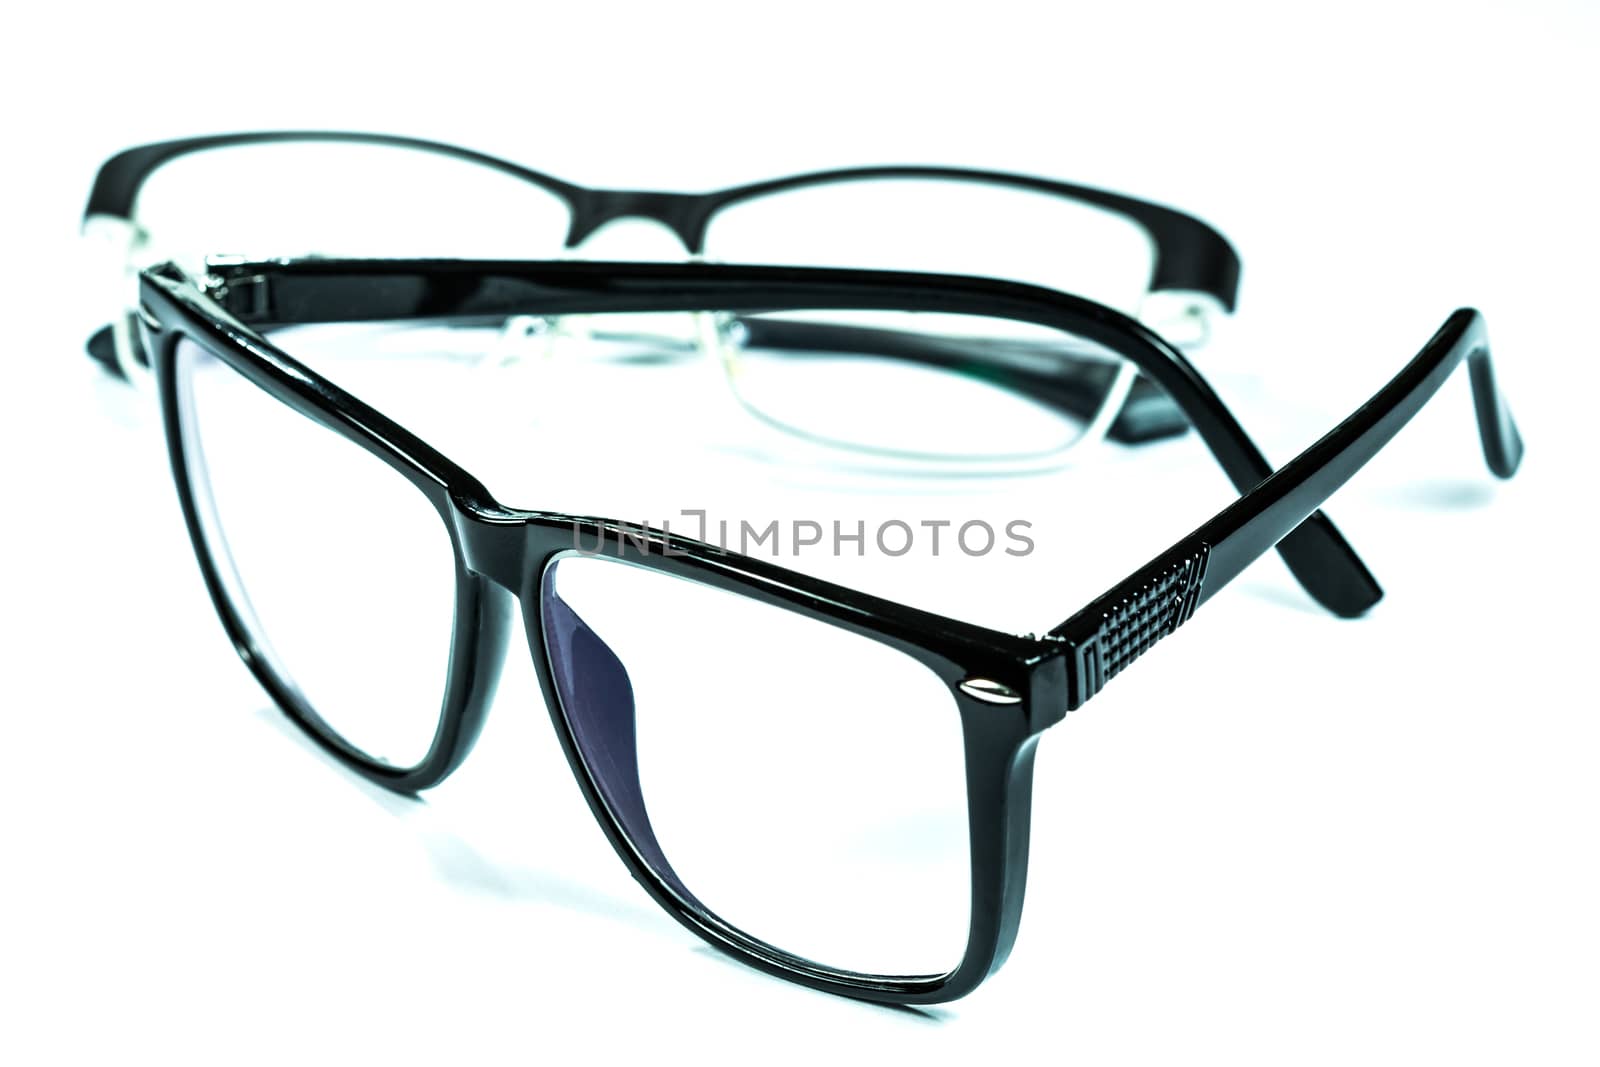 eye glasses on white background by blackzheep